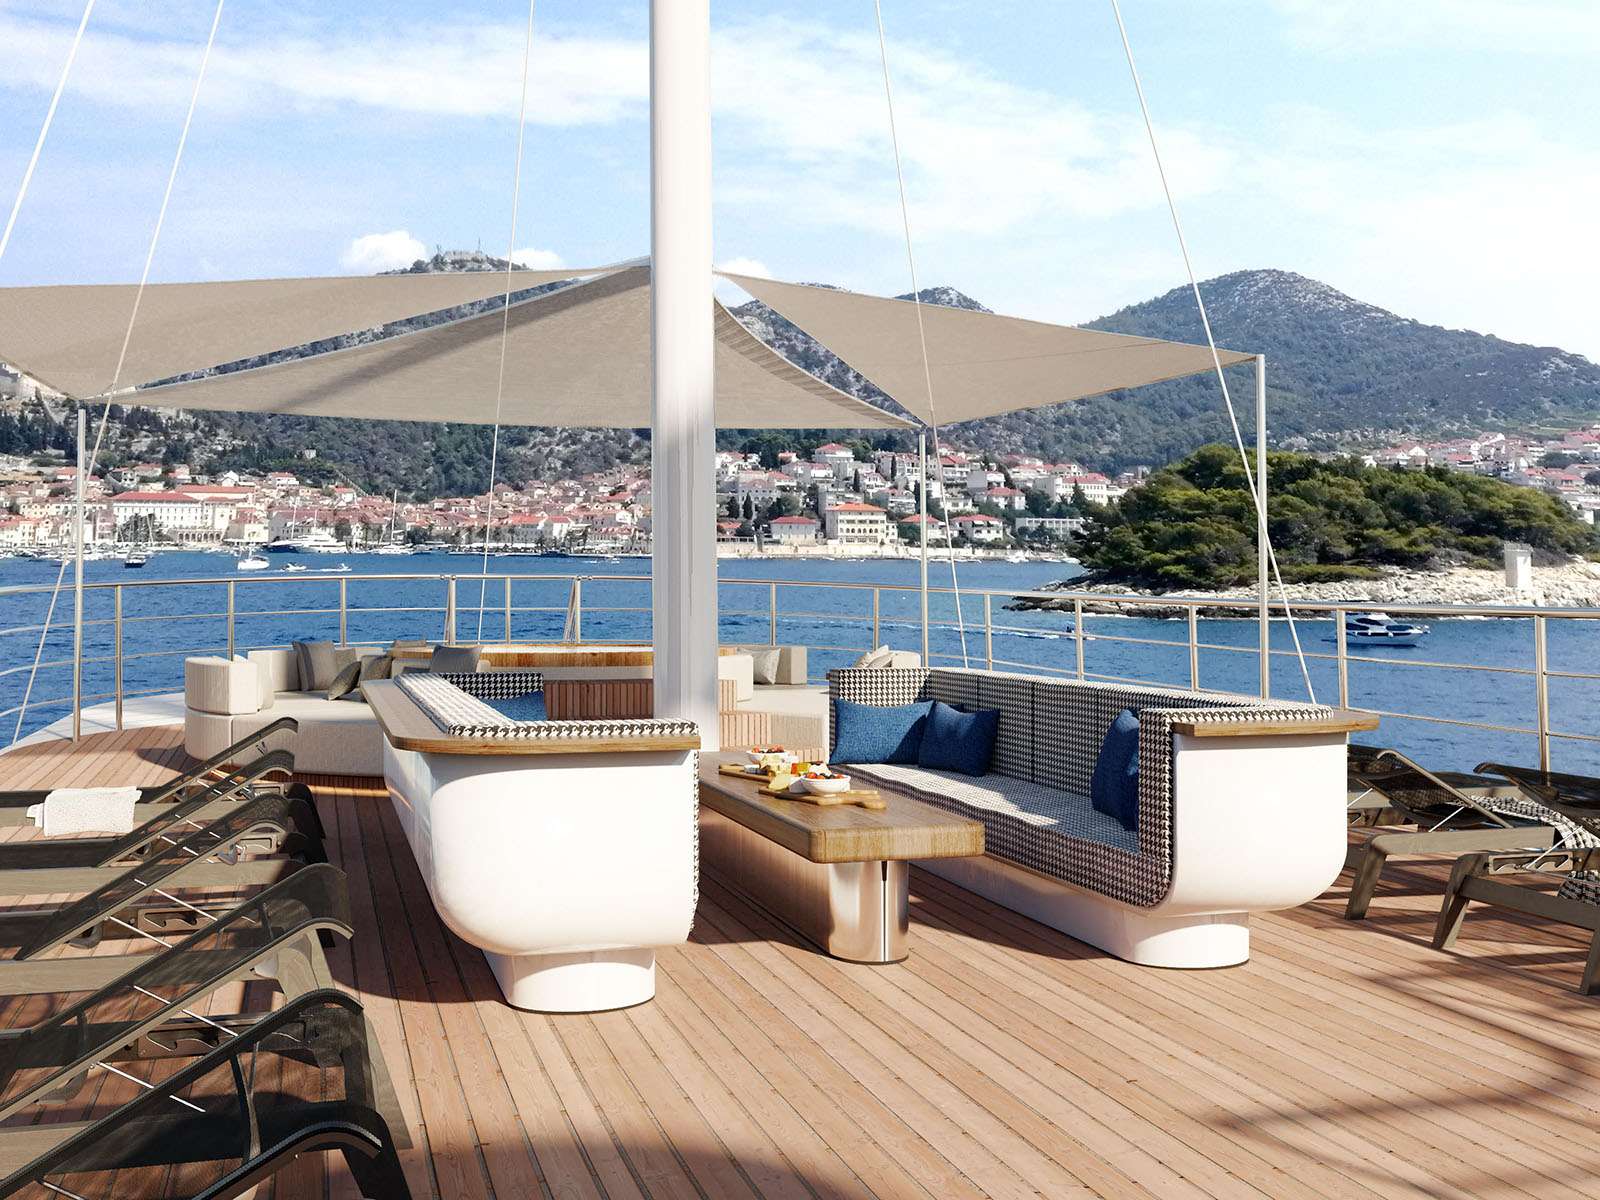 Bellezza - Yacht Charter Banjole & Boat hire in Croatia 4